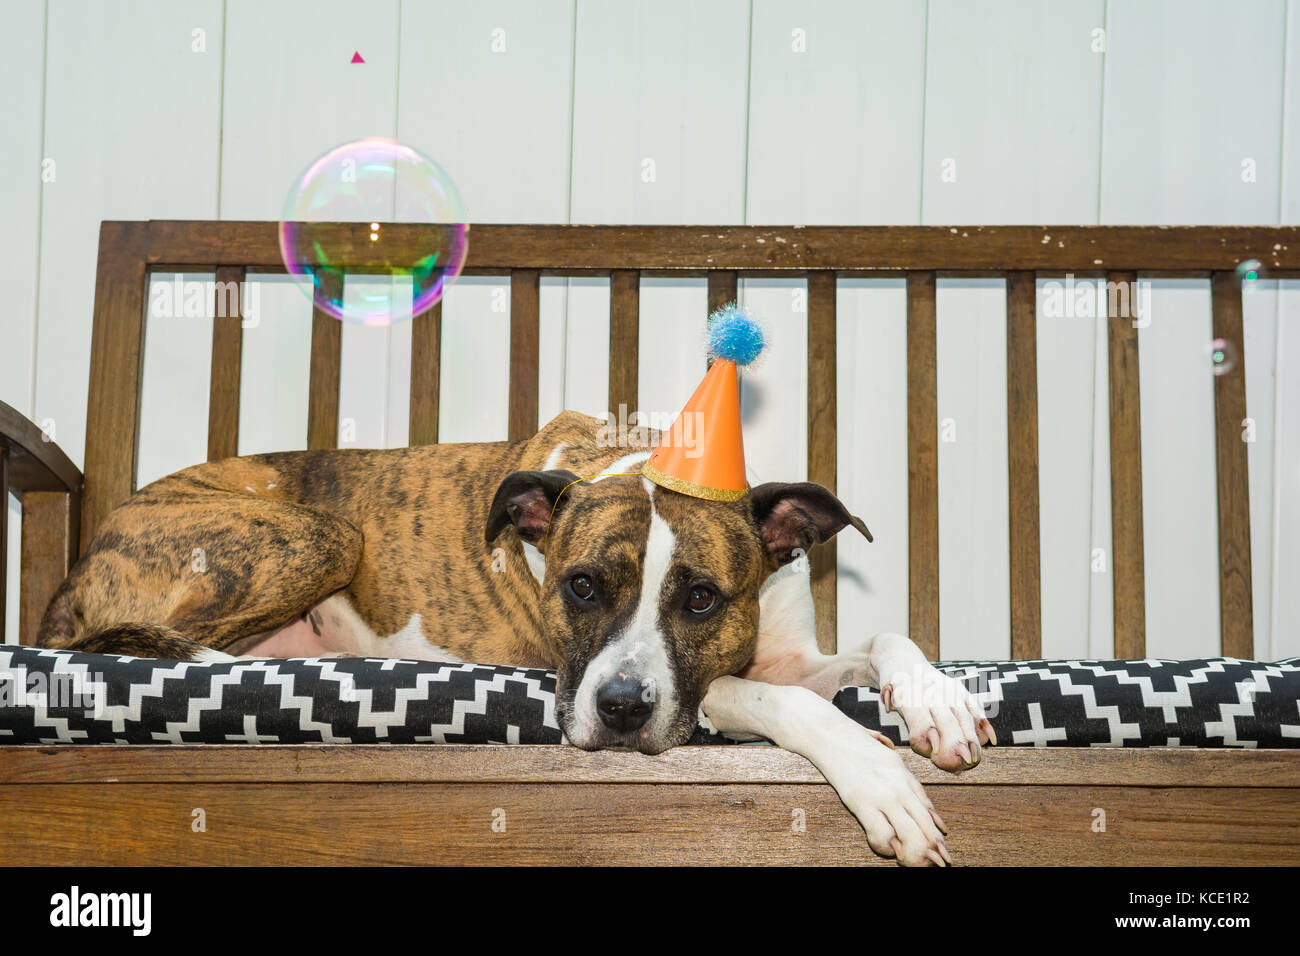 Un simpatico cane ad una festa a tema animale partito. Foto Stock